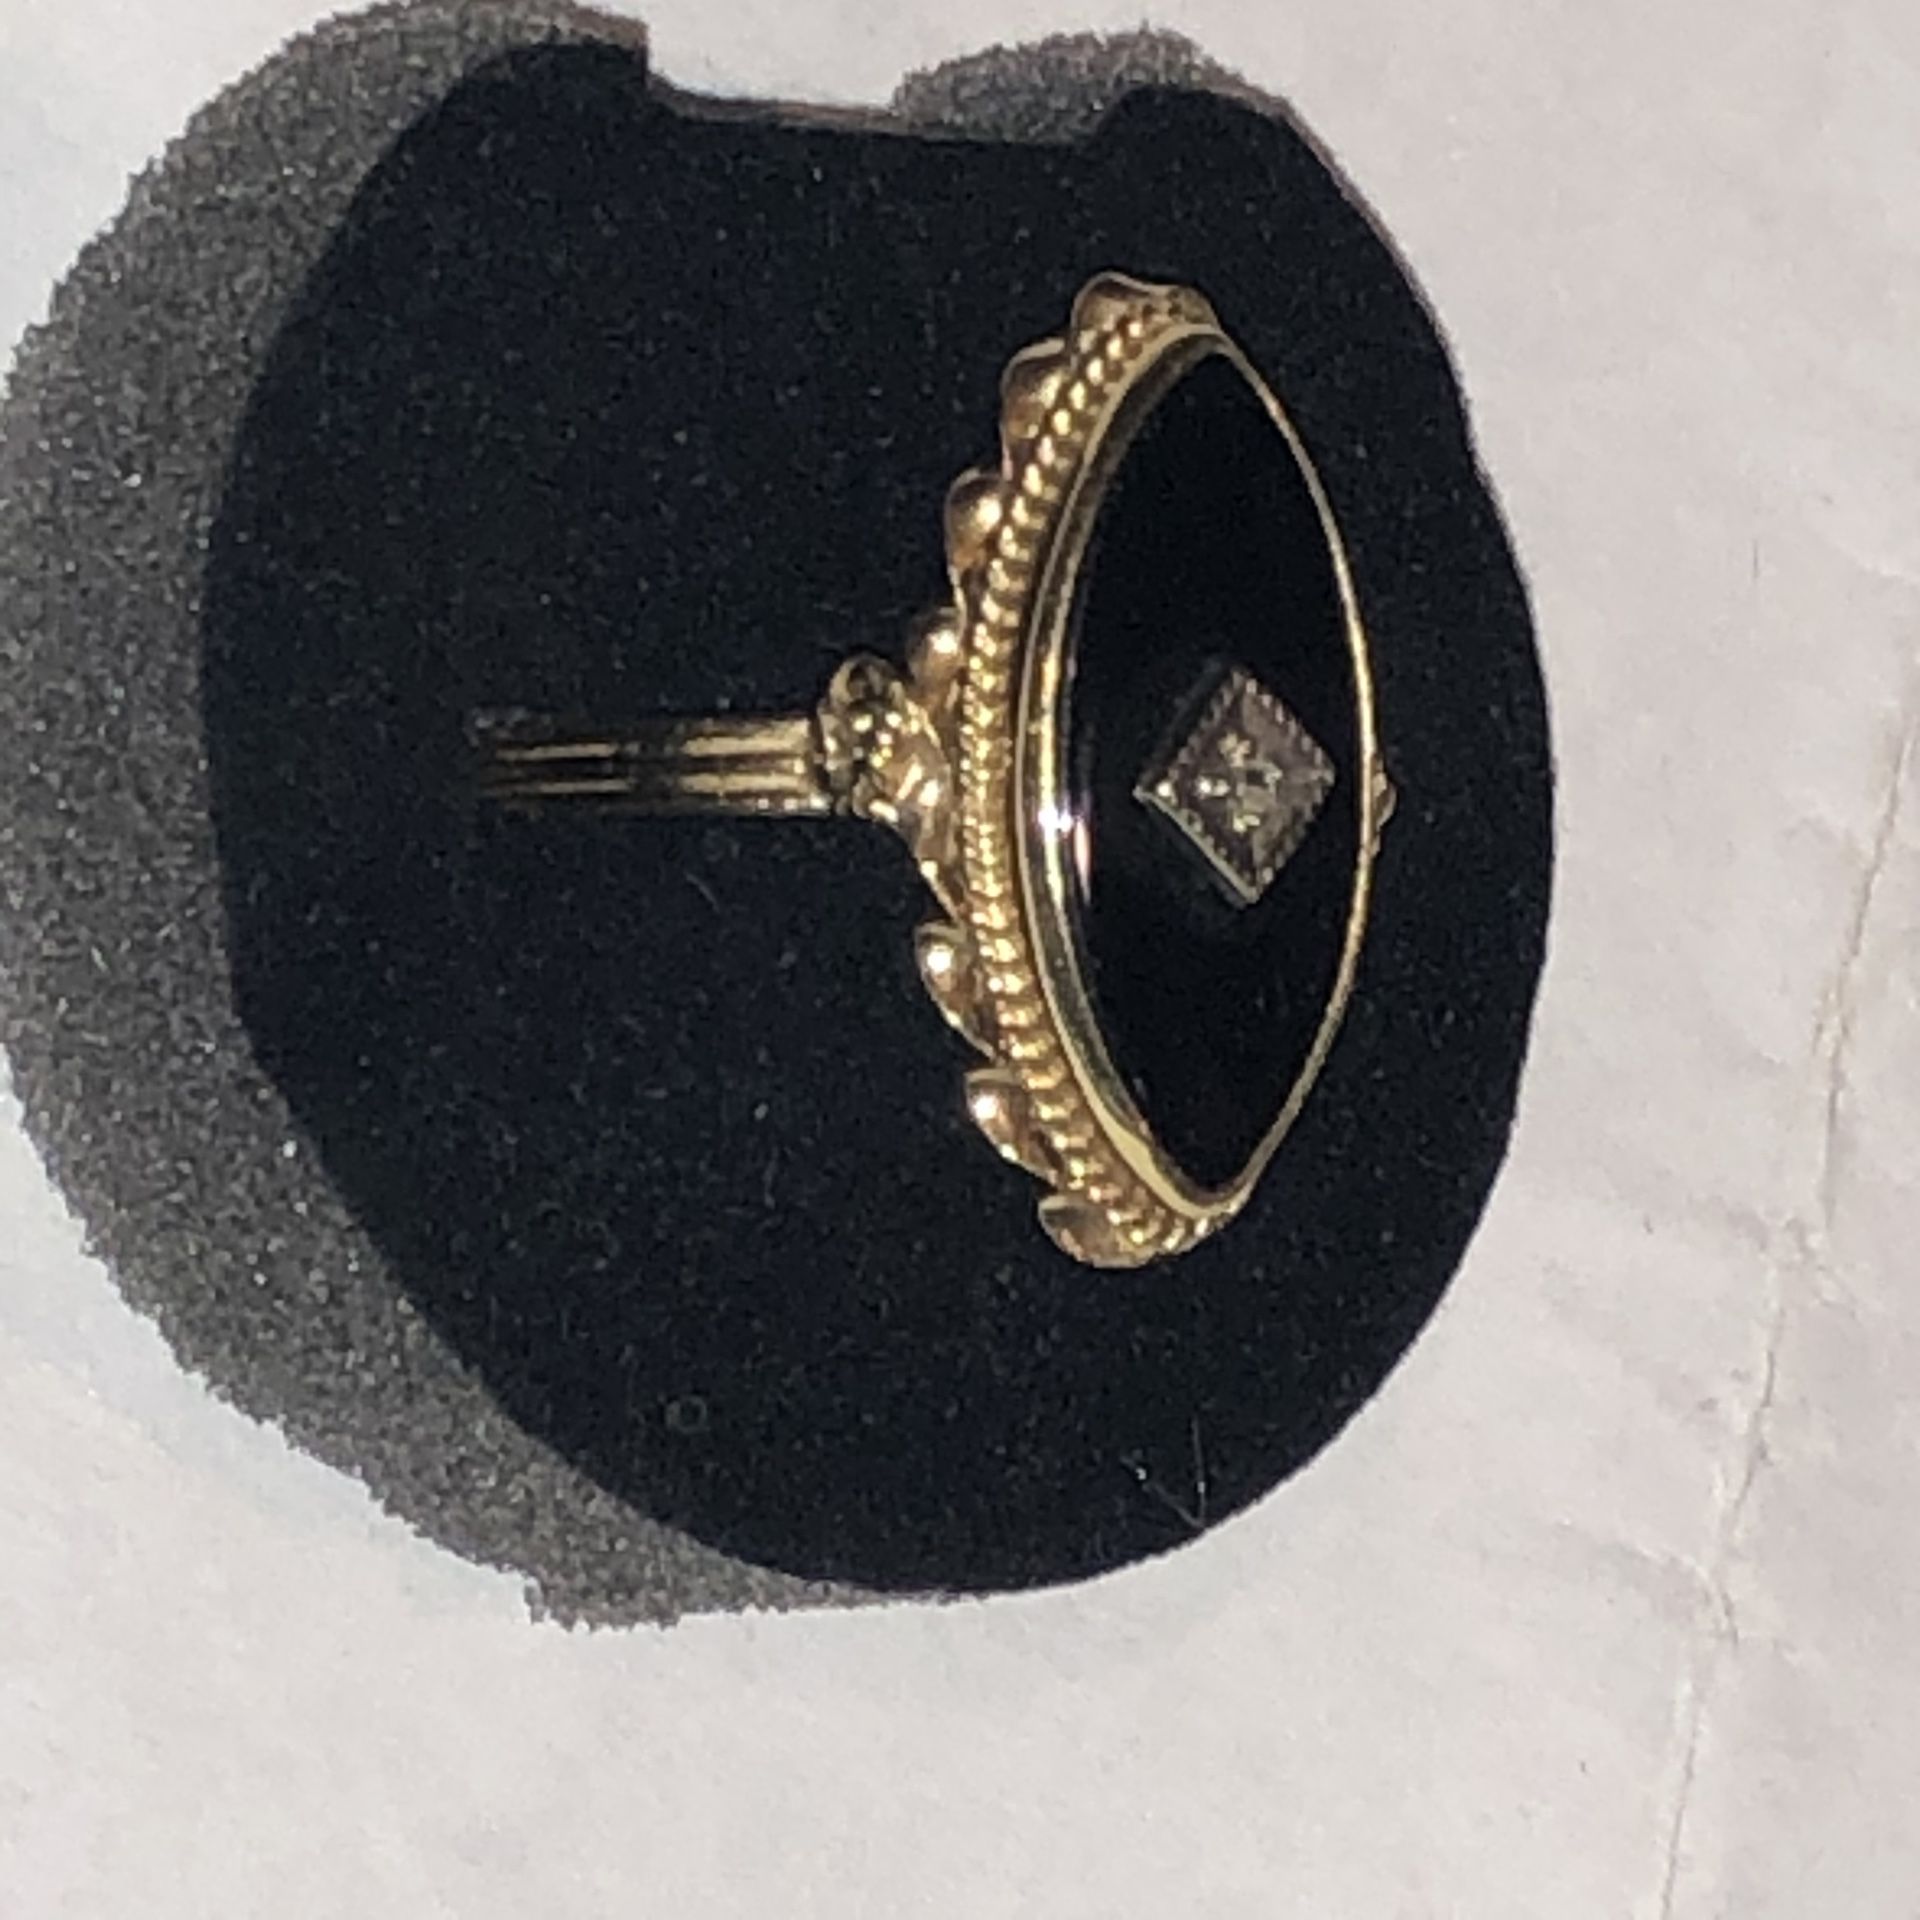 14k woman’s onyx diamond ring size 7 3.2 grams mint!